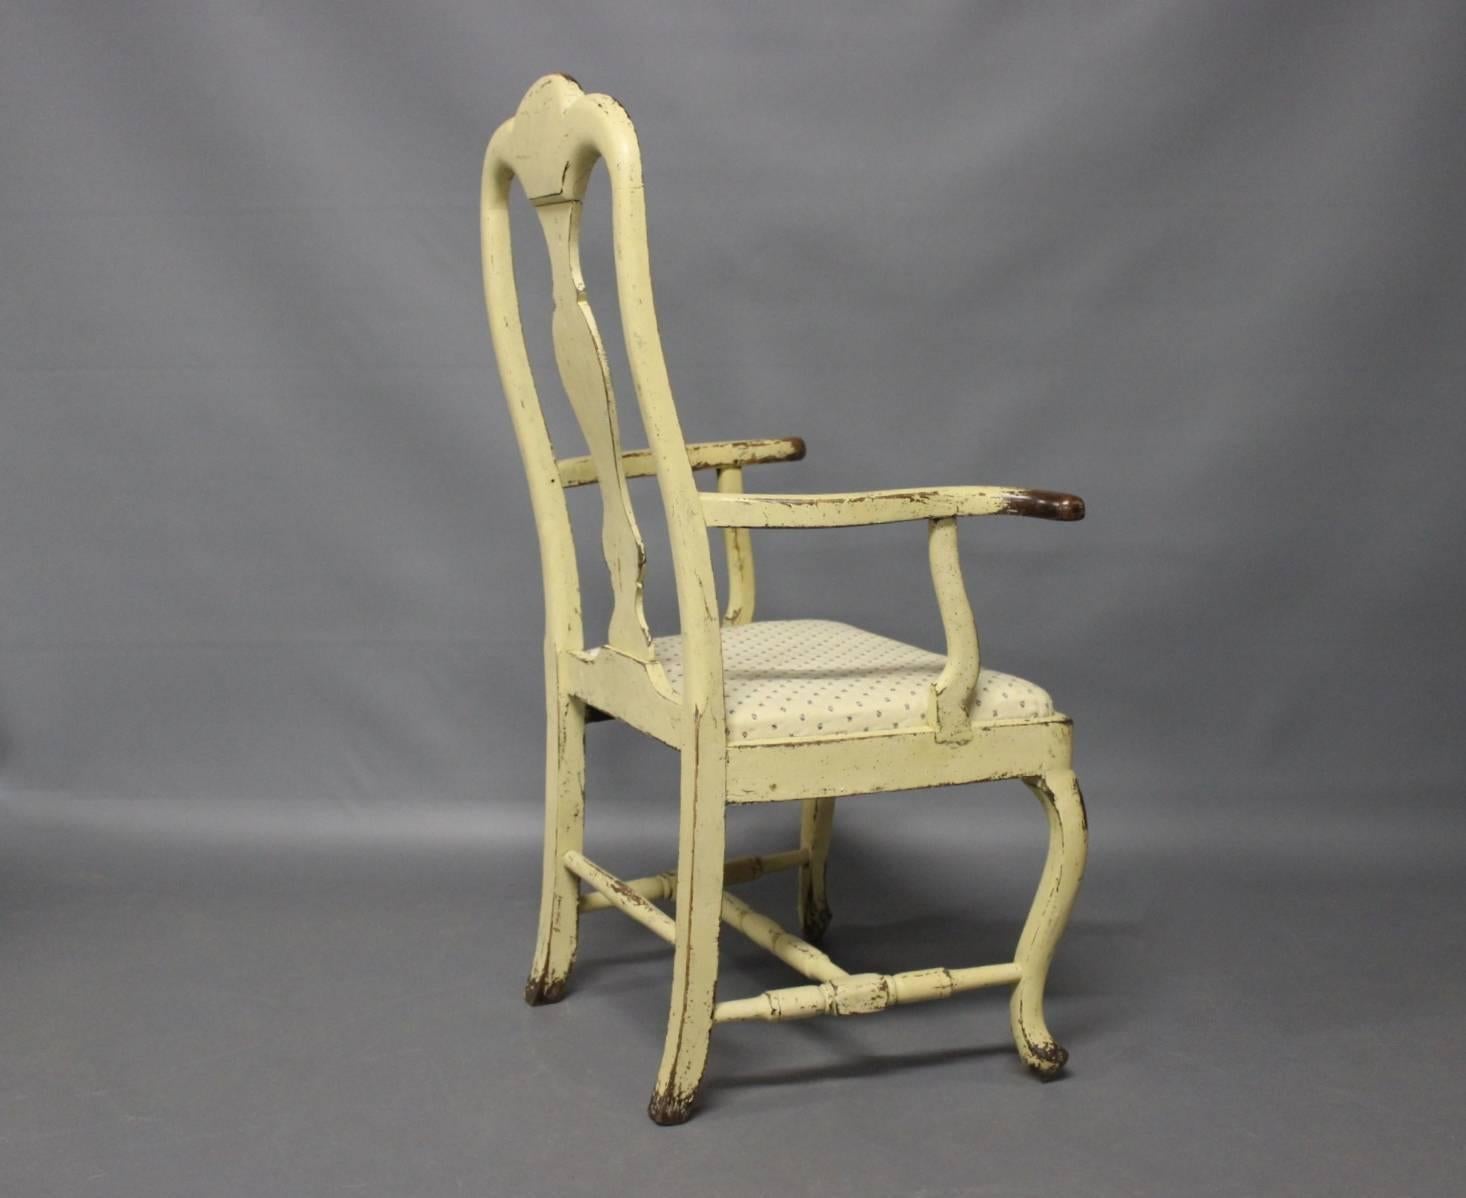 La chaise rococo en bois peint du Danemark, datant d'environ 1740, est un bel exemple de mobilier de la période rococo. Le rococo est un style orné et décoratif apparu au XVIIIe siècle, caractérisé par ses formes courbes, ses détails complexes et